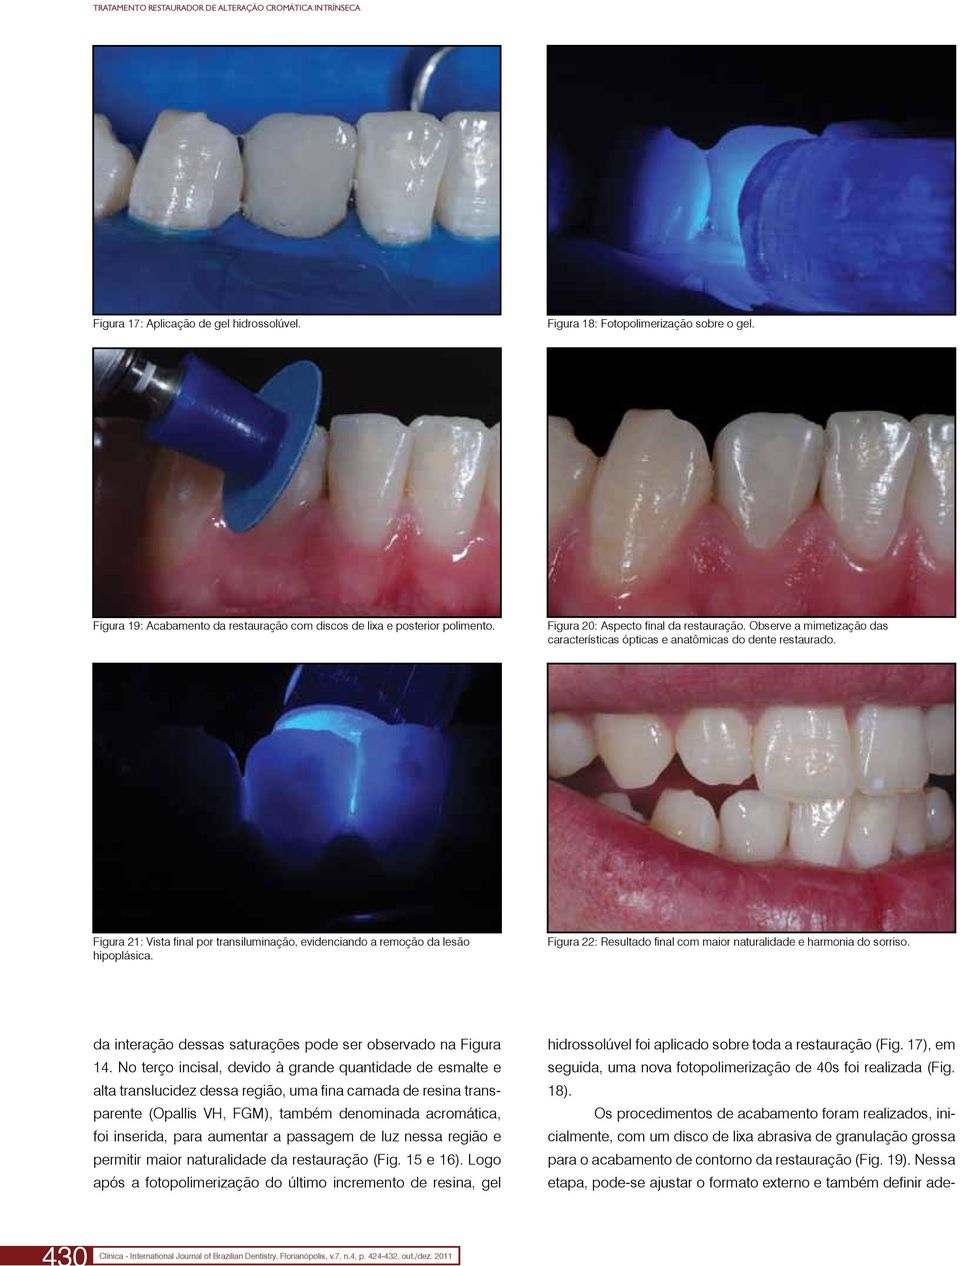 Observe a mimetização das características ópticas e anatômicas do dente restaurado. Figura 21: Vista final por transiluminação, evidenciando a remoção da lesão hipoplásica.